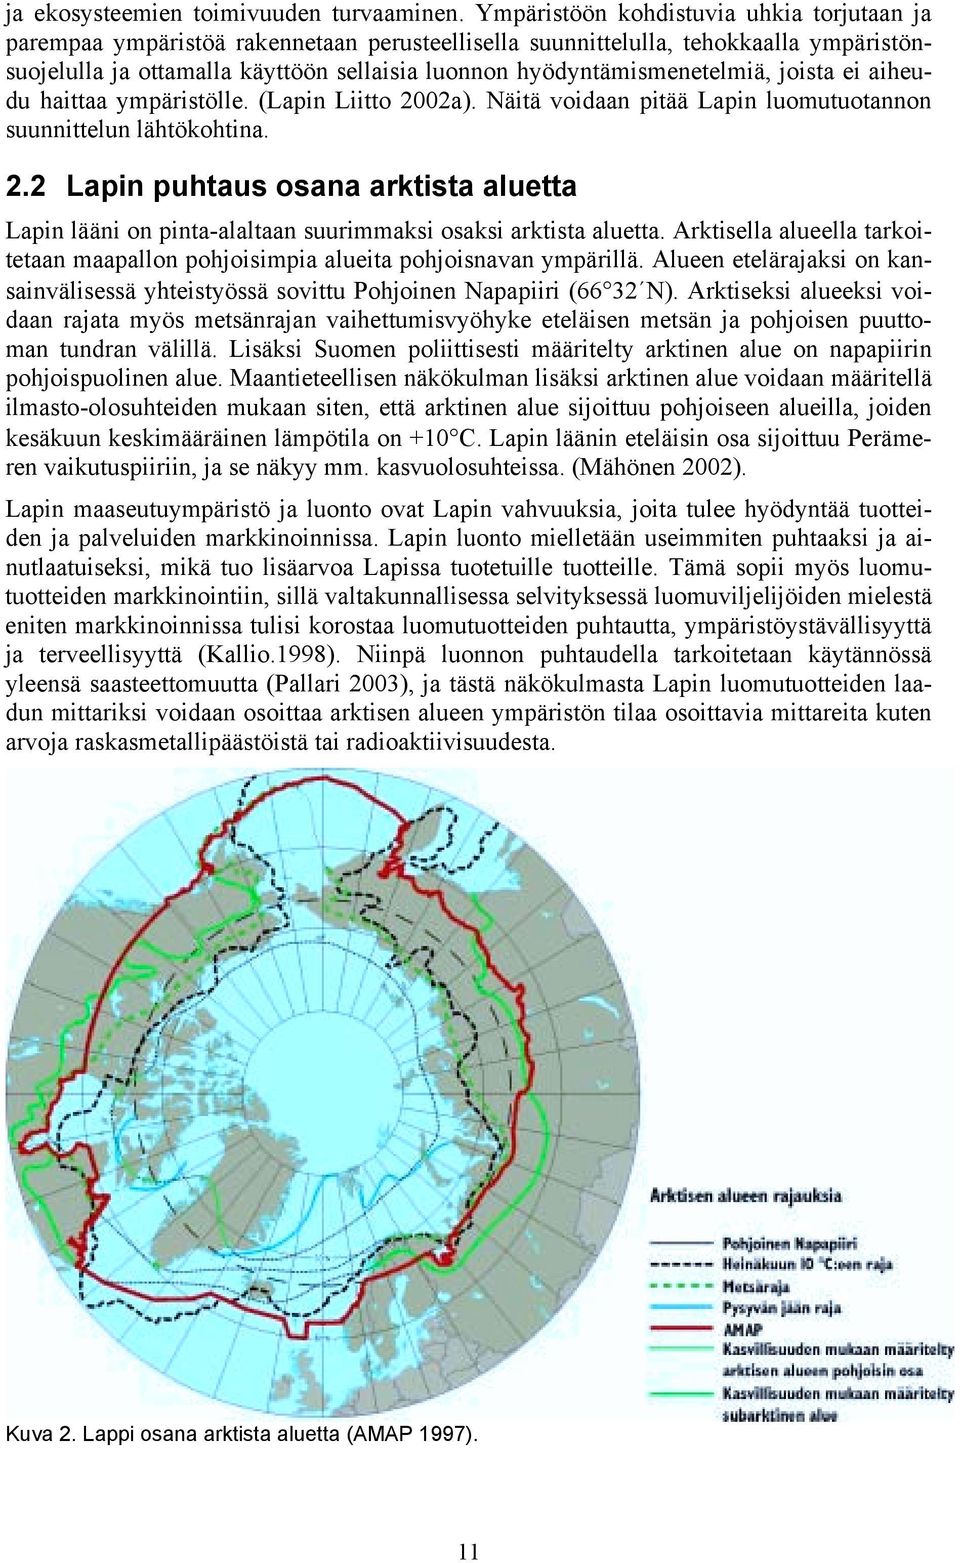 hyödyntämismenetelmiä, joista ei aiheudu haittaa ympäristölle. (Lapin Liitto 2002a). Näitä voidaan pitää Lapin luomutuotannon suunnittelun lähtökohtina. 2.2 Lapin puhtaus osana arktista aluetta Lapin lääni on pinta-alaltaan suurimmaksi osaksi arktista aluetta.